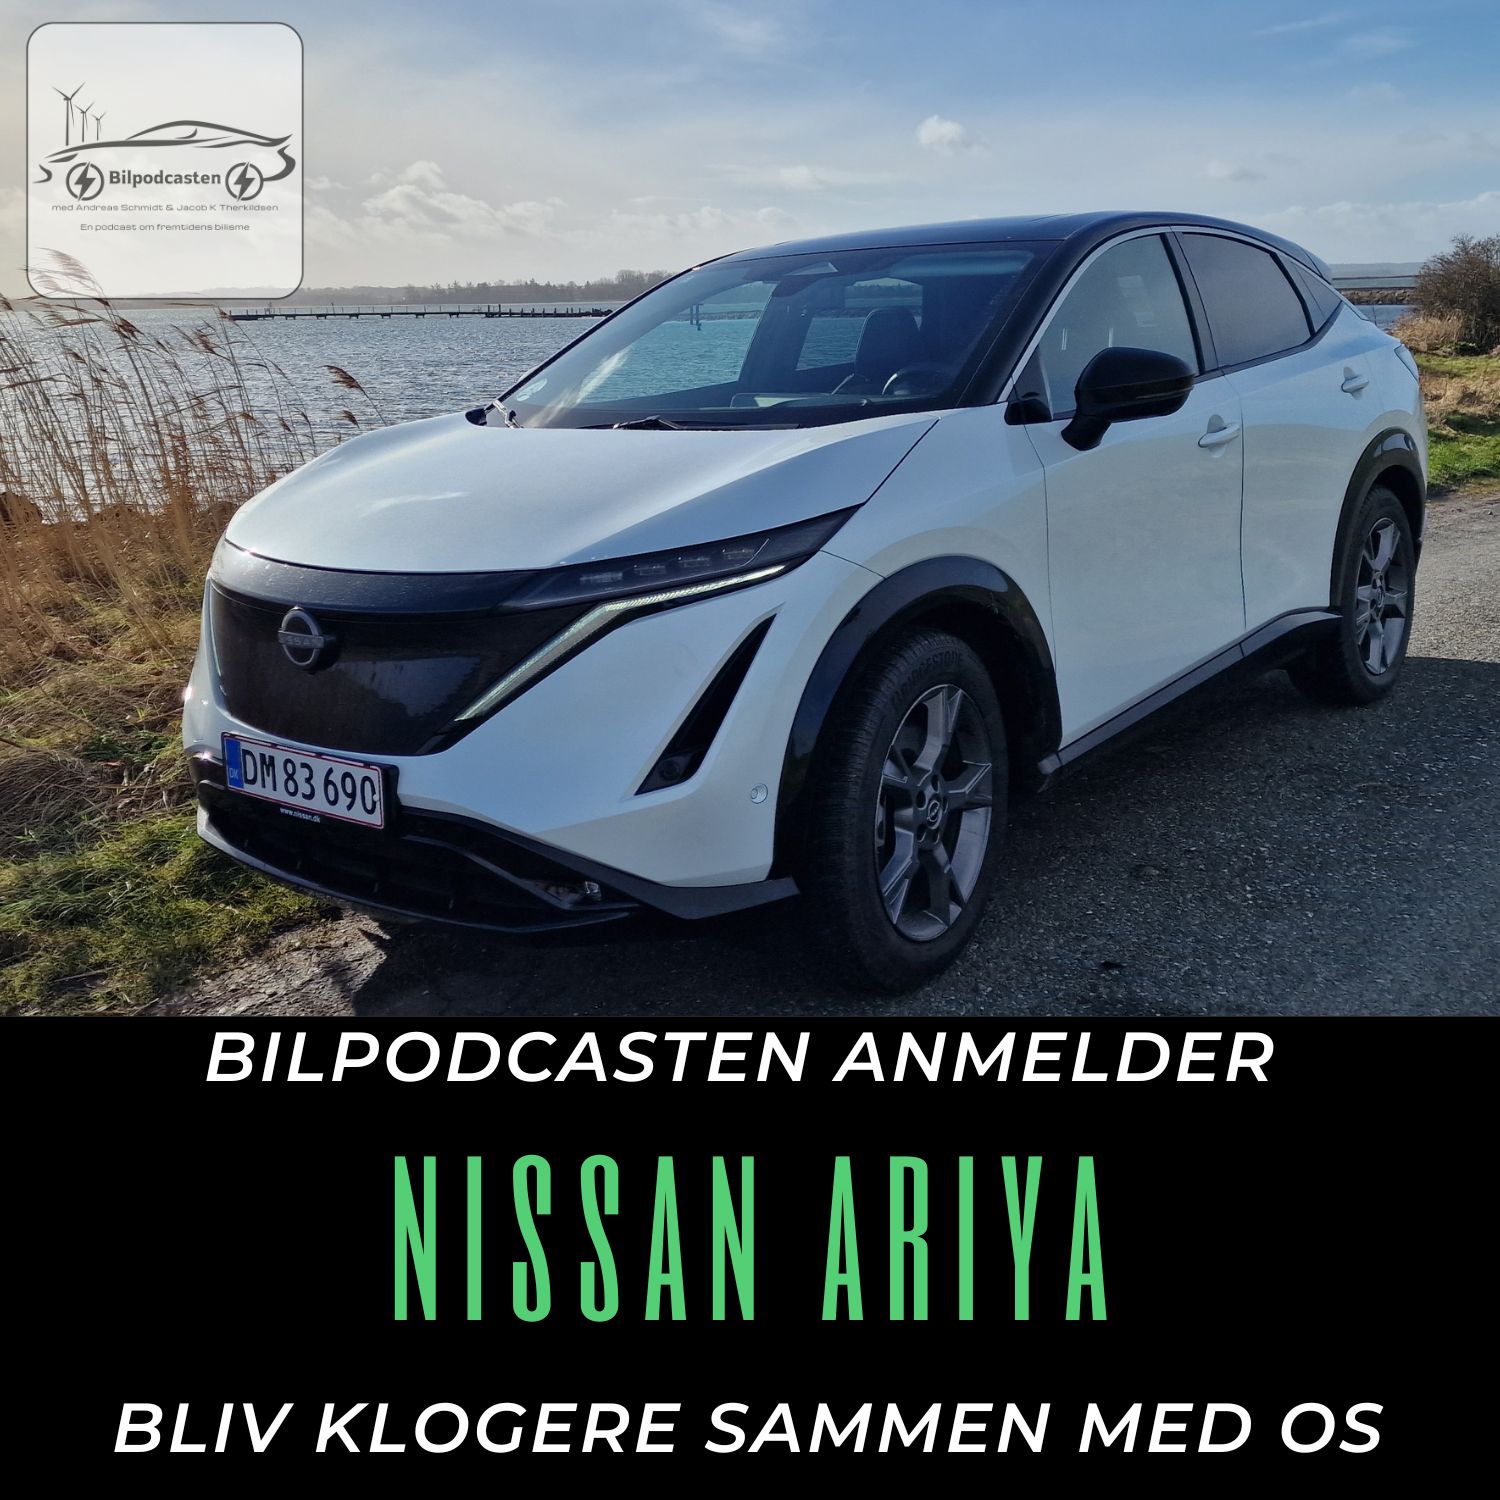 Nissan Ariya - En bilanmeldelse fra Bilpodcasten